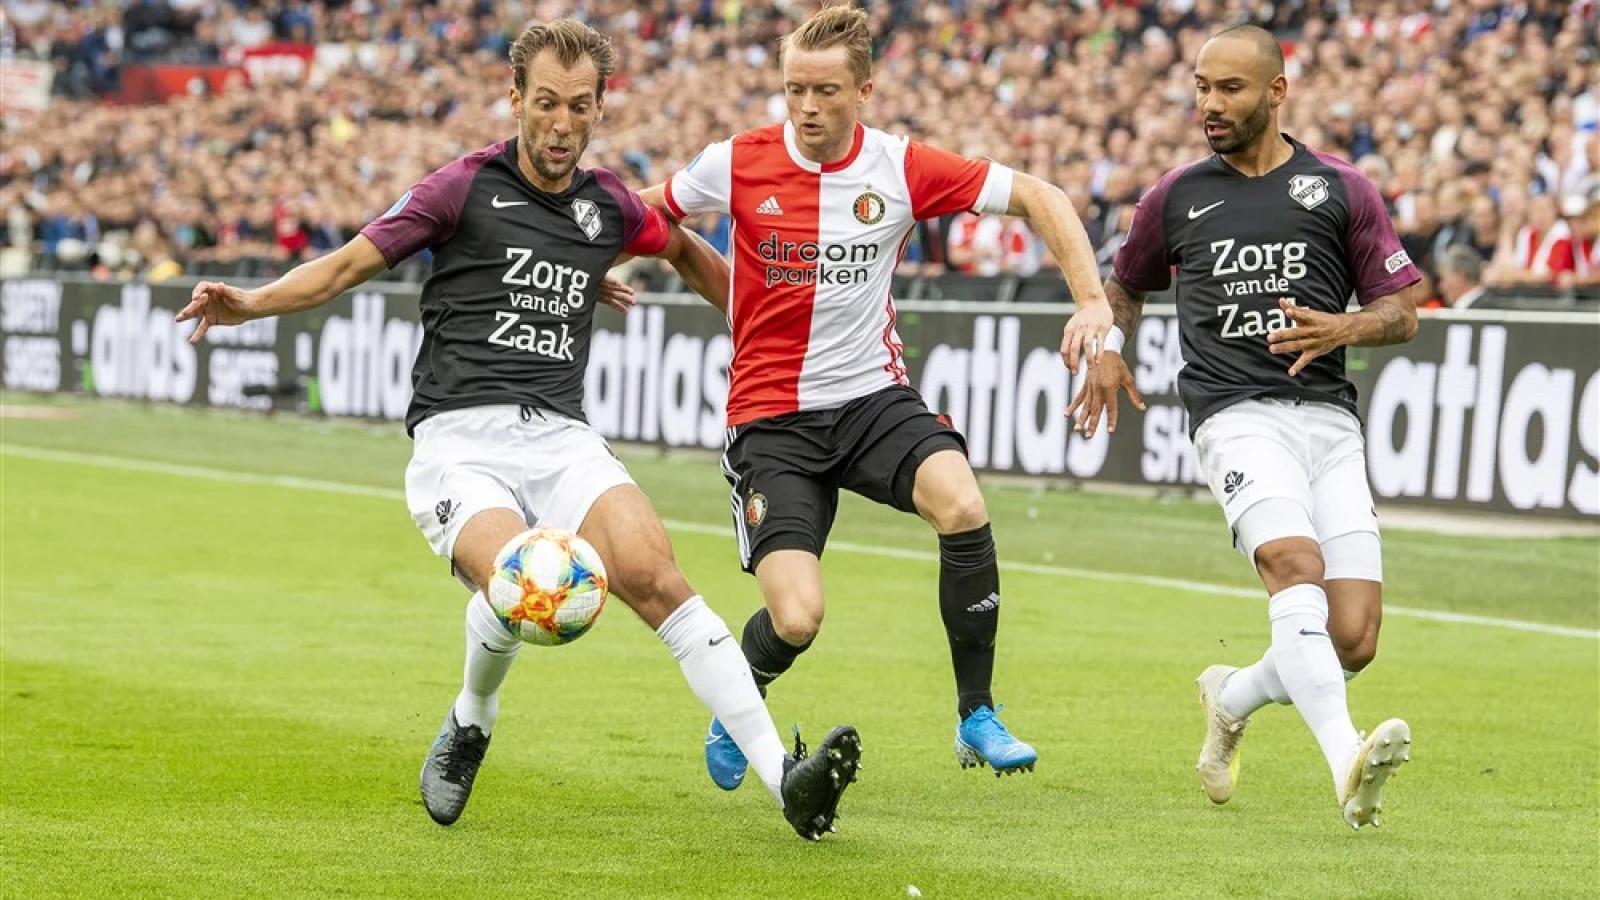 LIVE | Feyenoord - FC Utrecht 1-1 | Einde wedstrijd